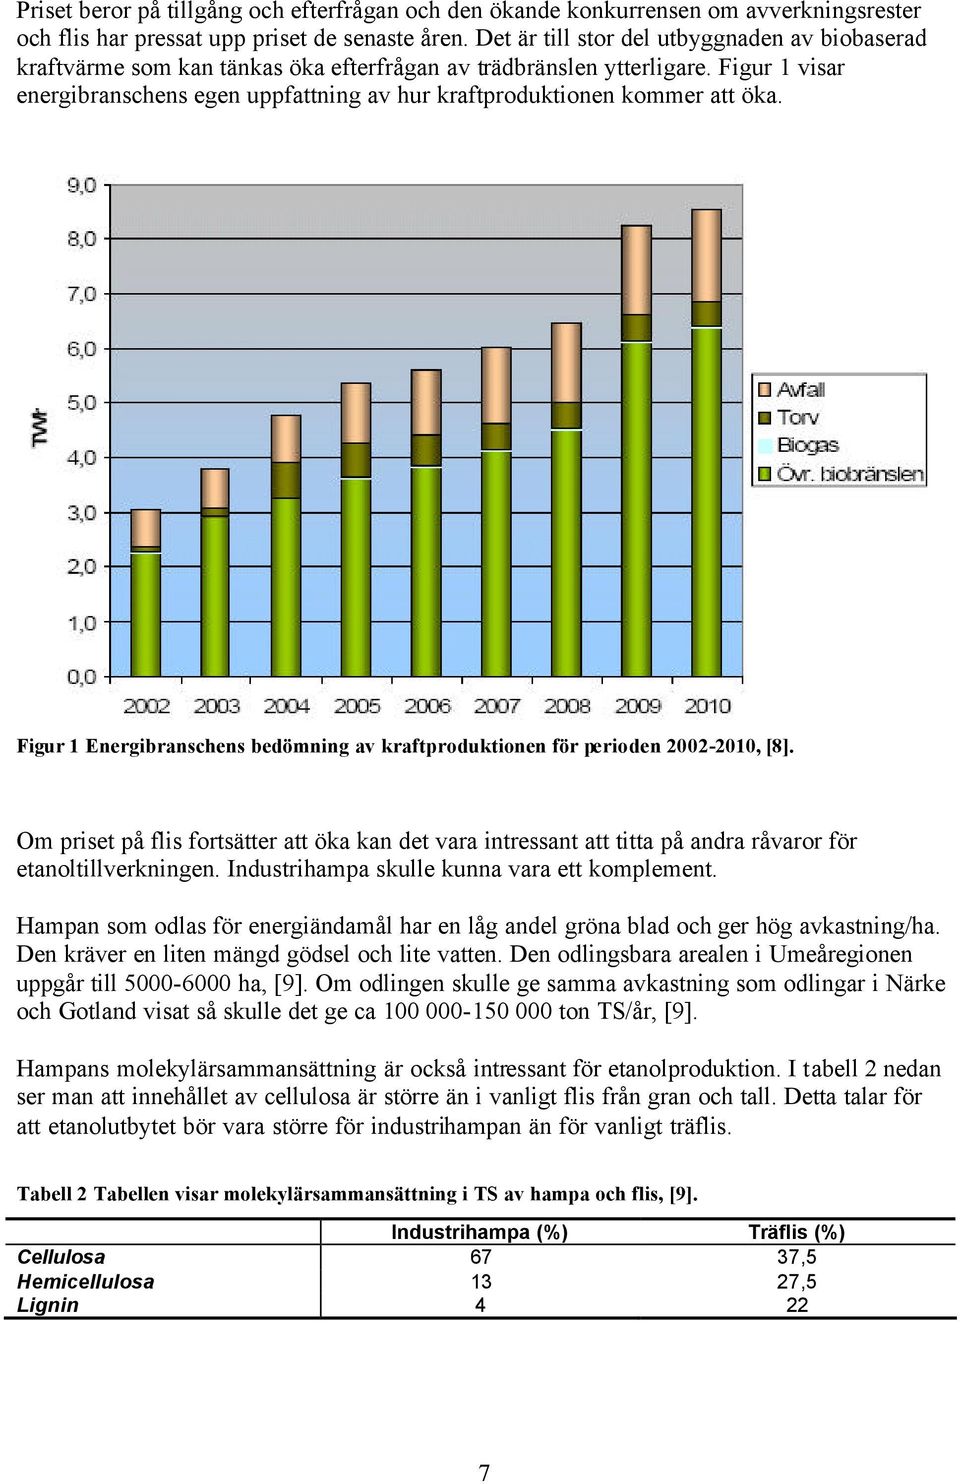 Figur 1 visar energibranschens egen uppfattning av hur kraftproduktionen kommer att öka. Figur 1 Energibranschens bedömning av kraftproduktionen för perioden 2002-2010, [8].